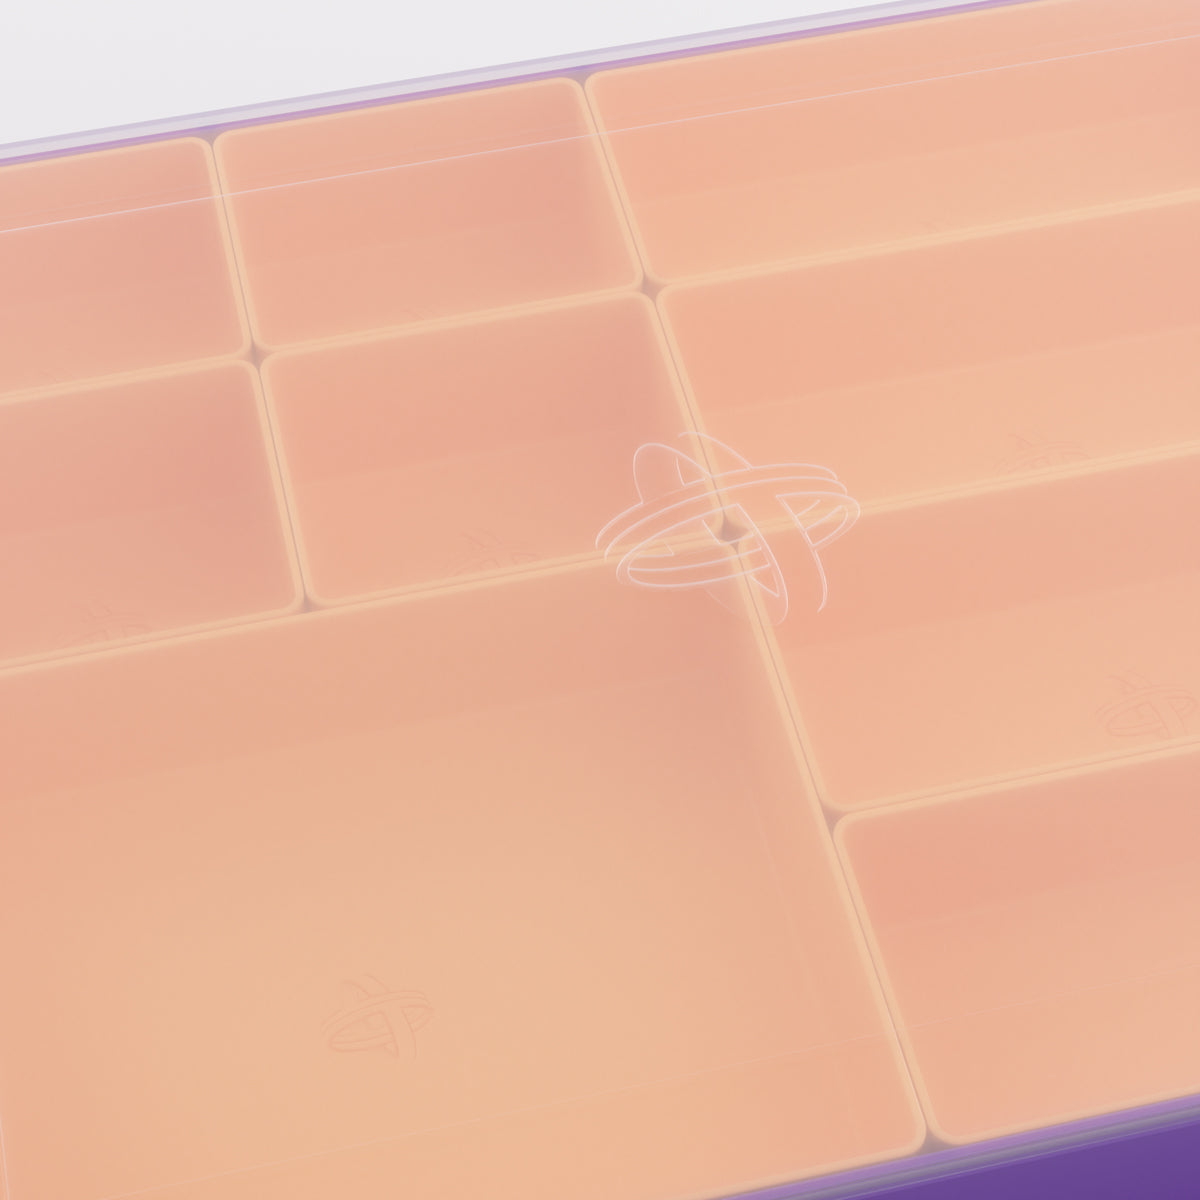 Gamegenic Token Silo Convertible Advanced Storage Box - Purple/Orange